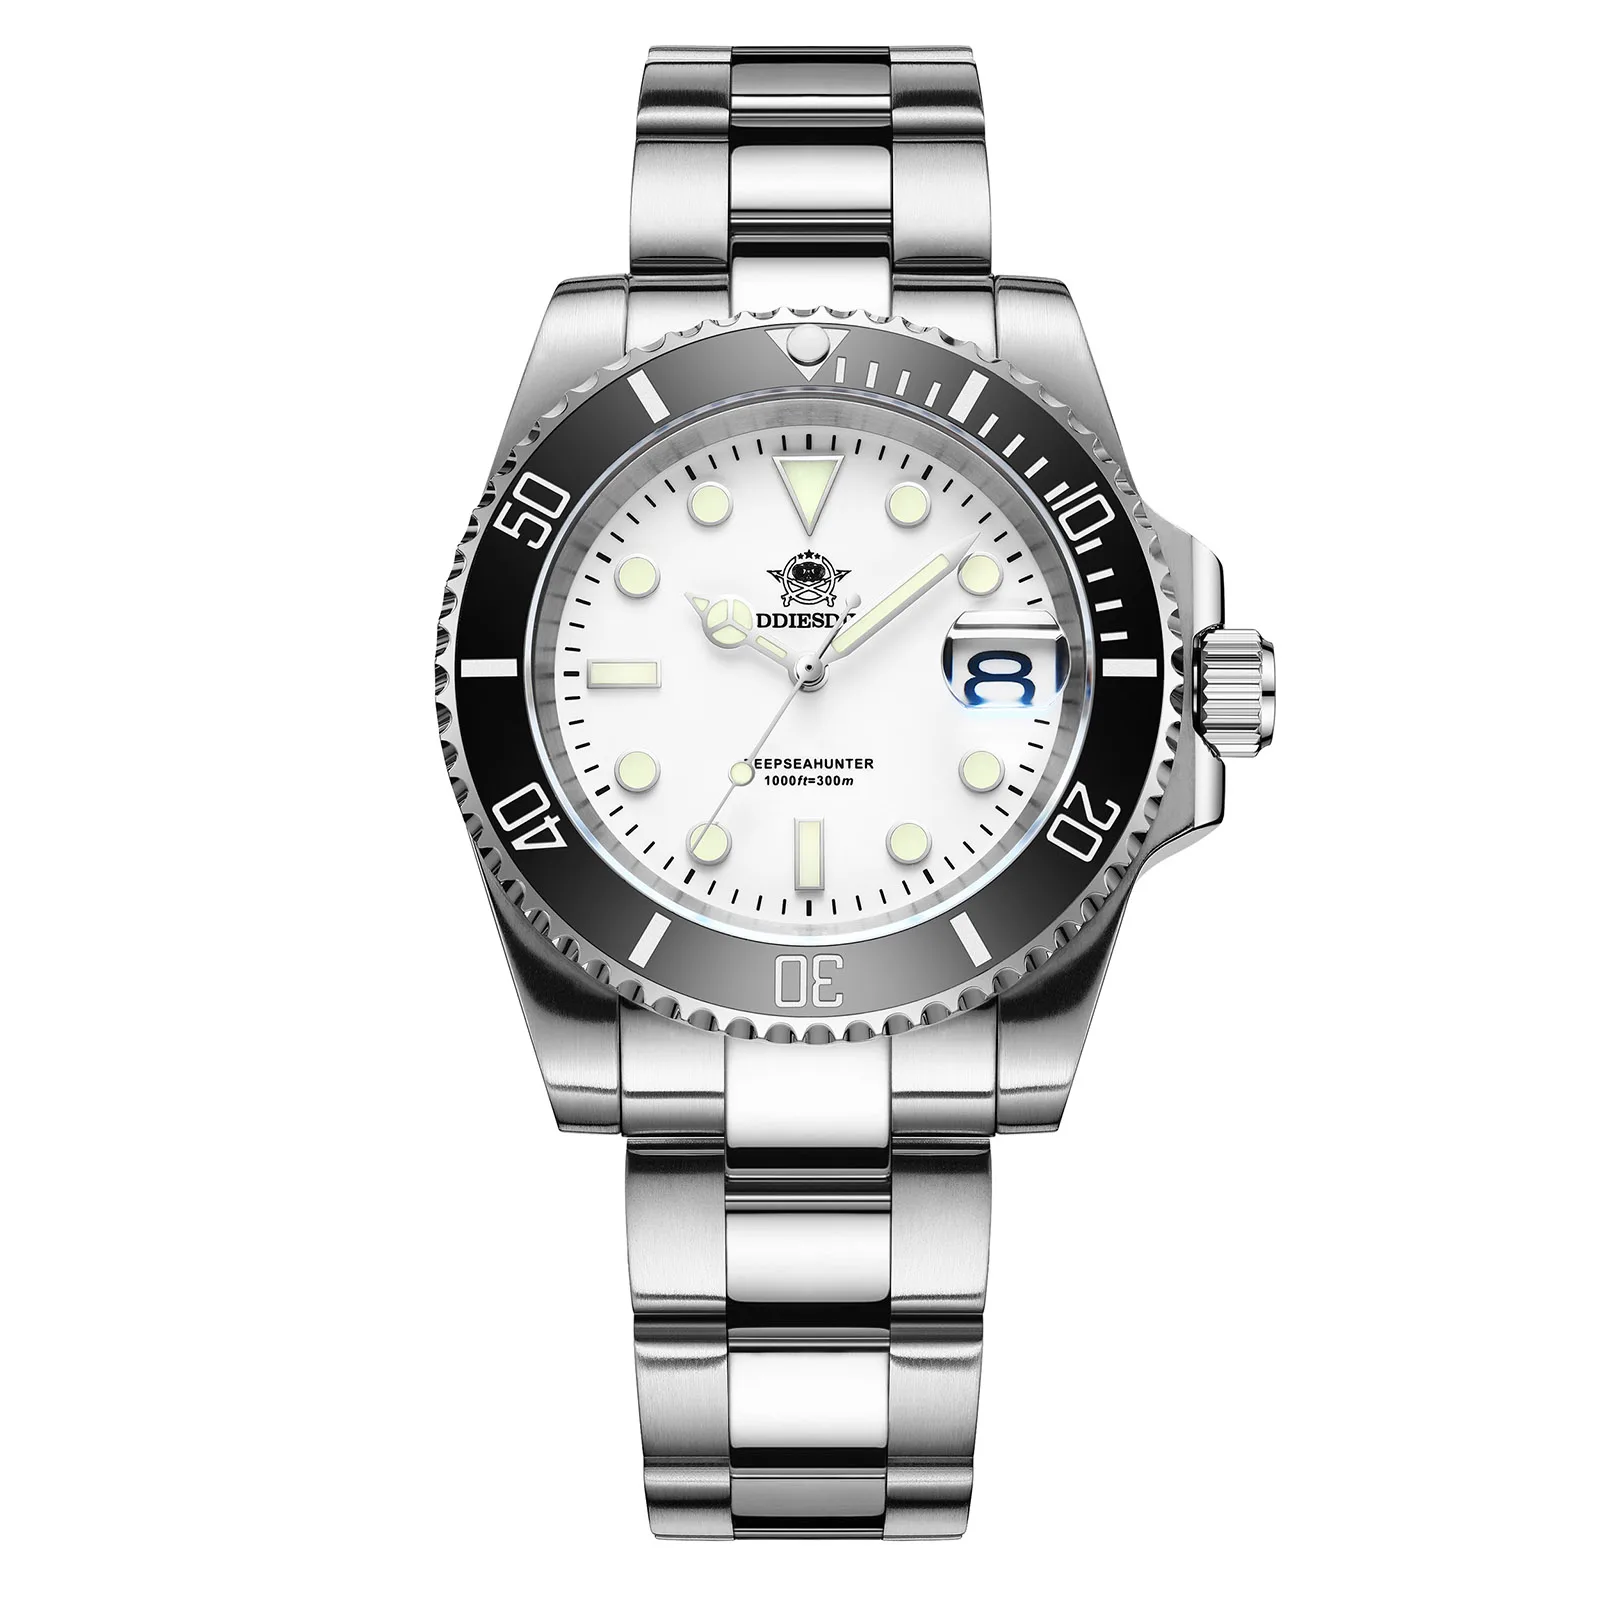 New Luxury Men Wristwatch Analog watch BGW9 luminous Sports Watch Stainl... - $98.65